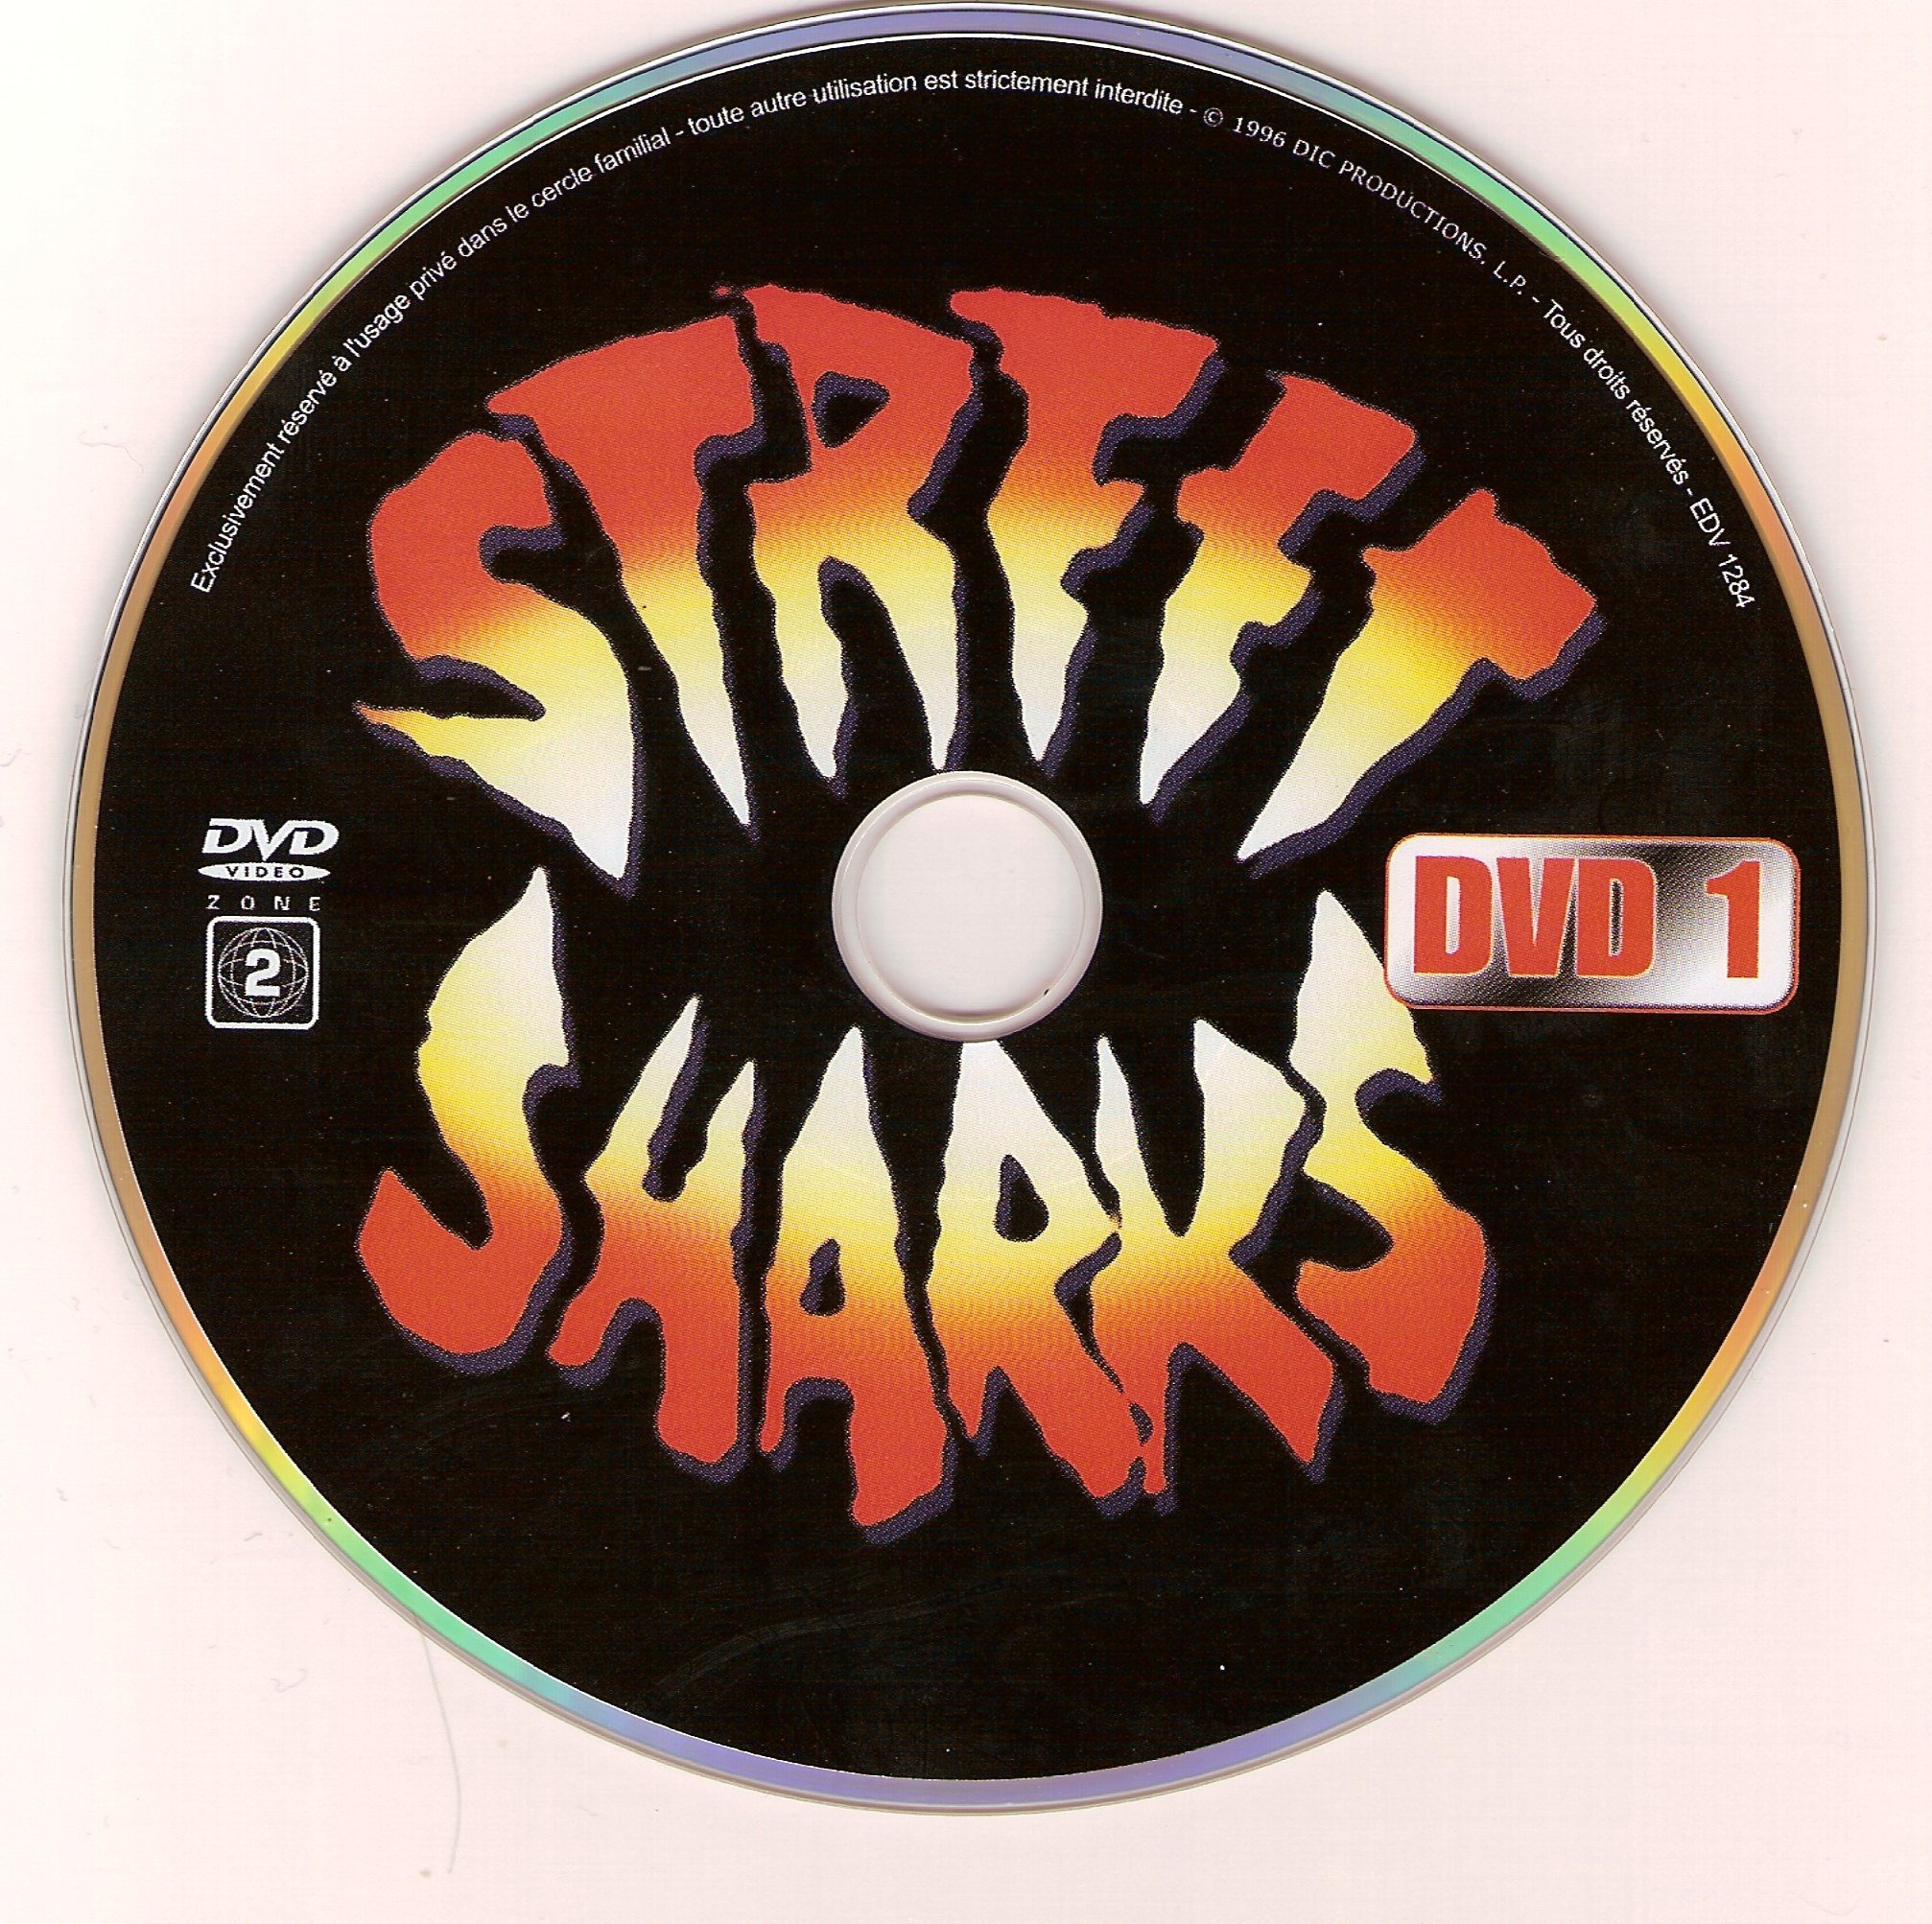 Steff sharks